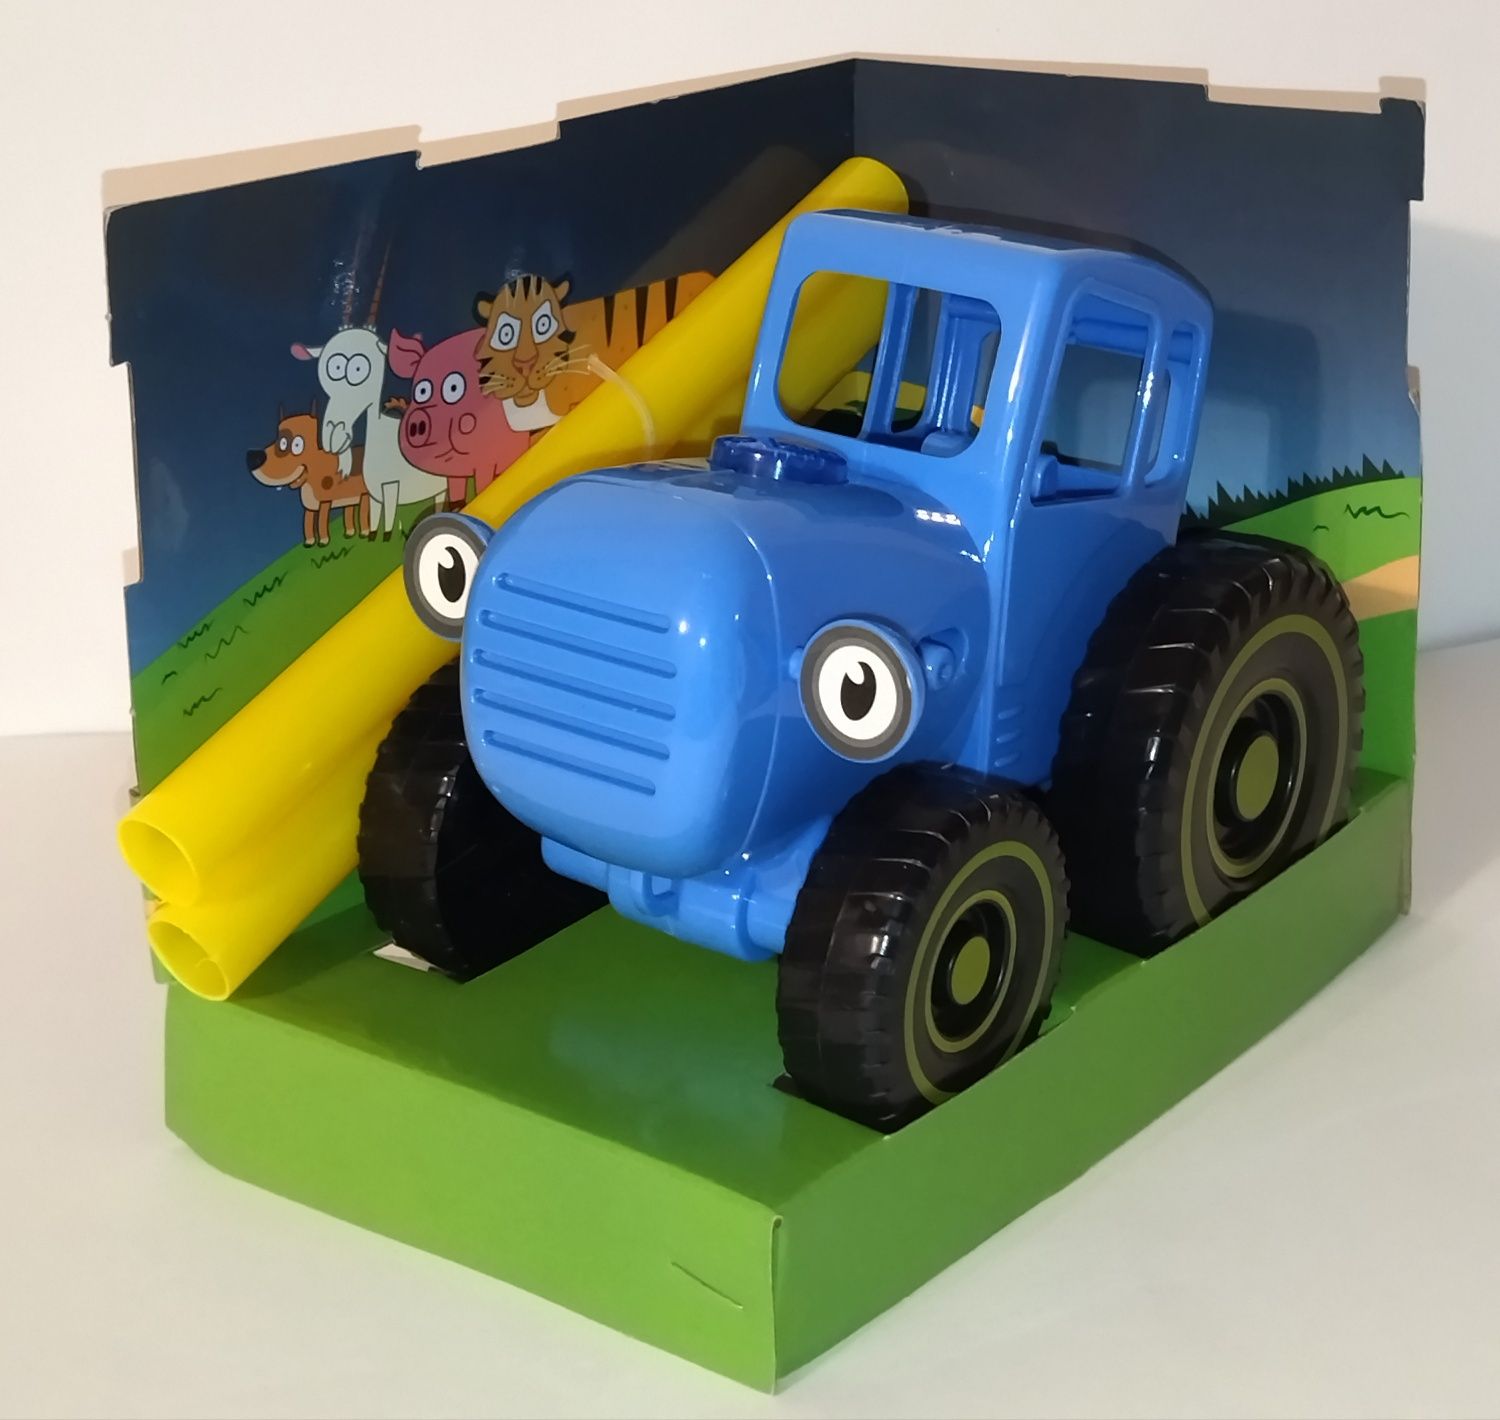 Игрушка "Синий Трактор" музыкальный с палкой каталкой.